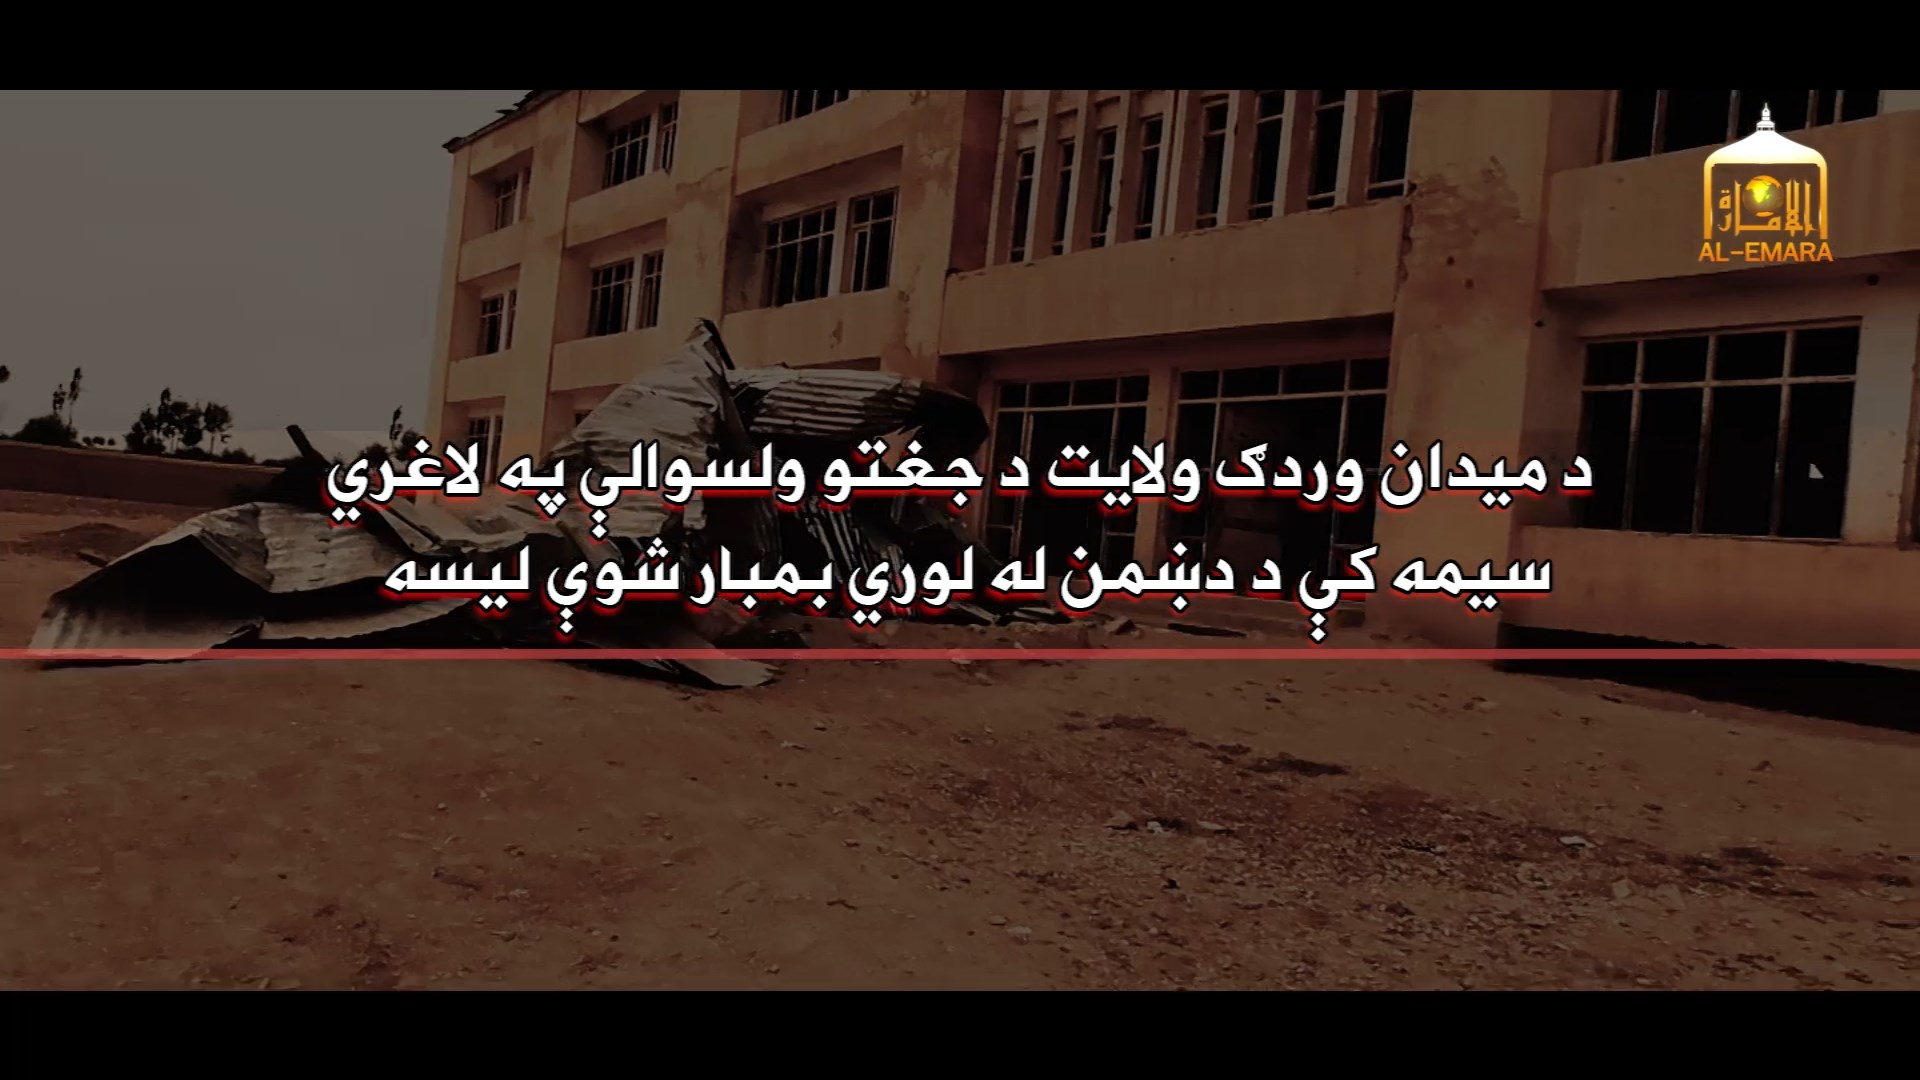 راپور ویدیویی از لیسه بمبارد شده در ولسوالی جغتوی میدان وردگ نشر شد